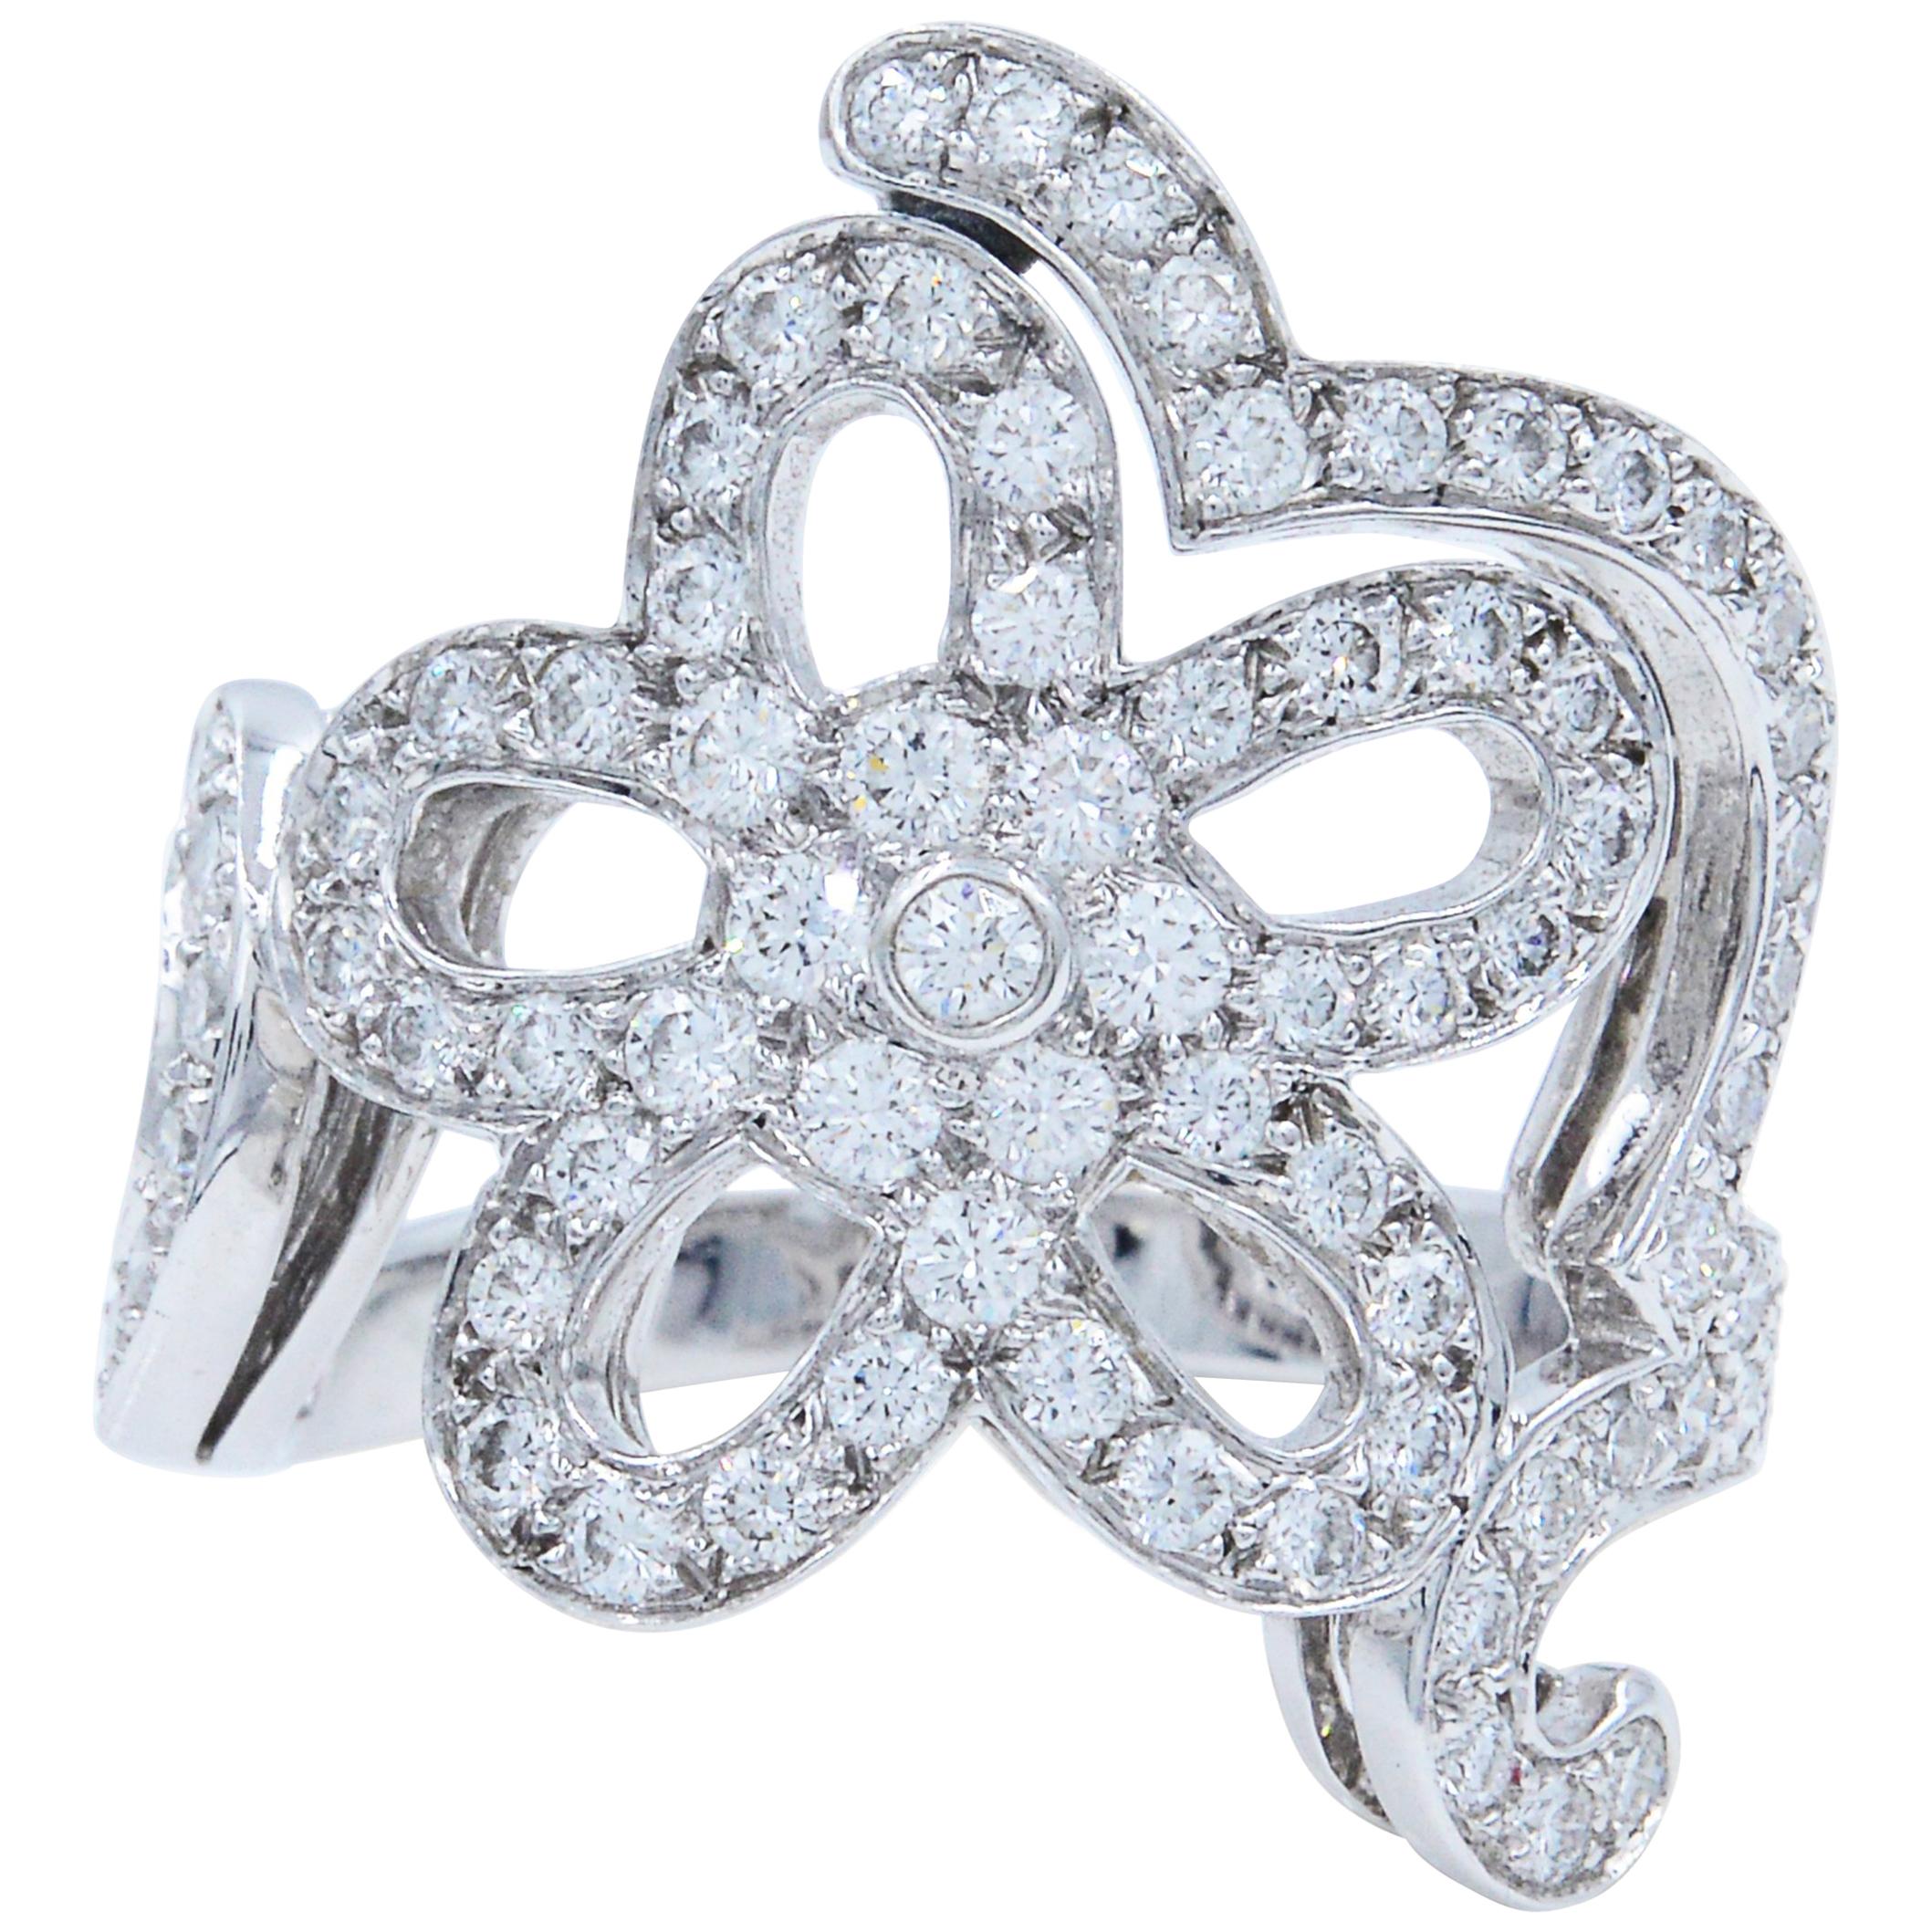 Van Cleef & Arpels 18 Karat White Gold Pave Diamond Floral Ring 1.56 Carat Size 